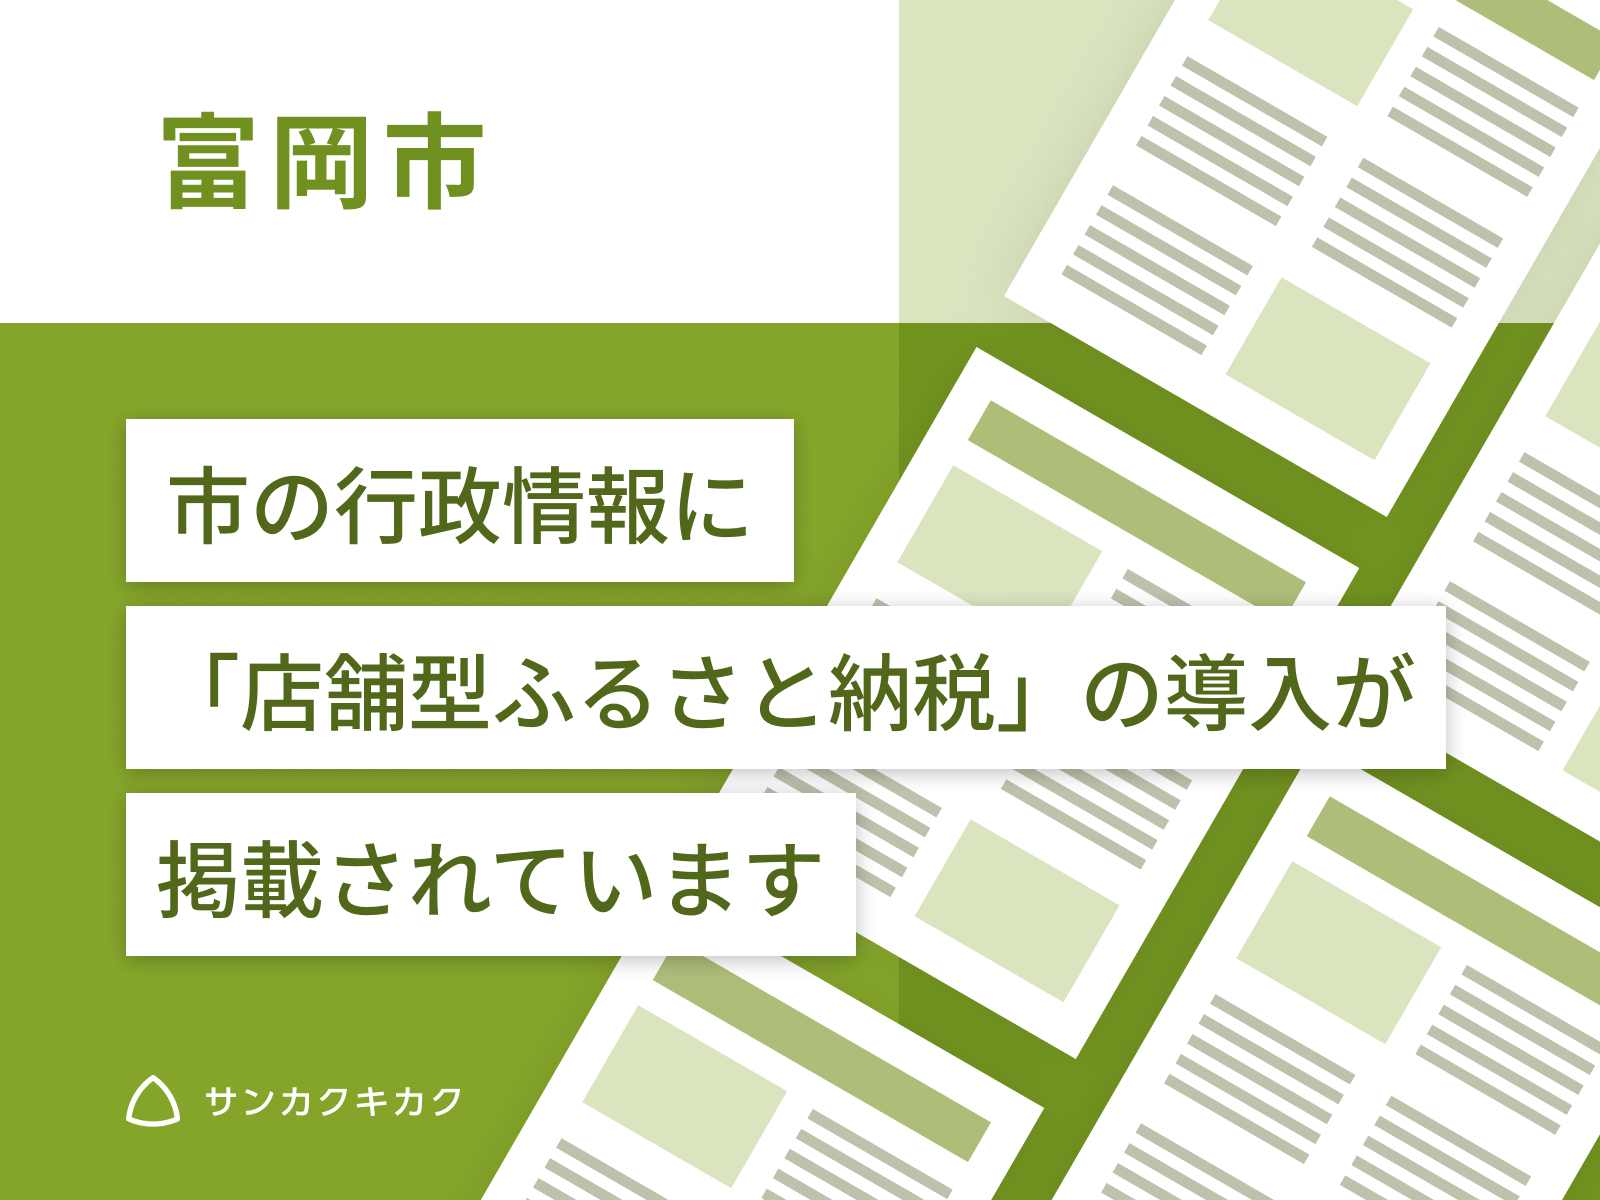 ふるさとズ｜群馬県富岡市での導入開始が市のホームページで掲載されました。